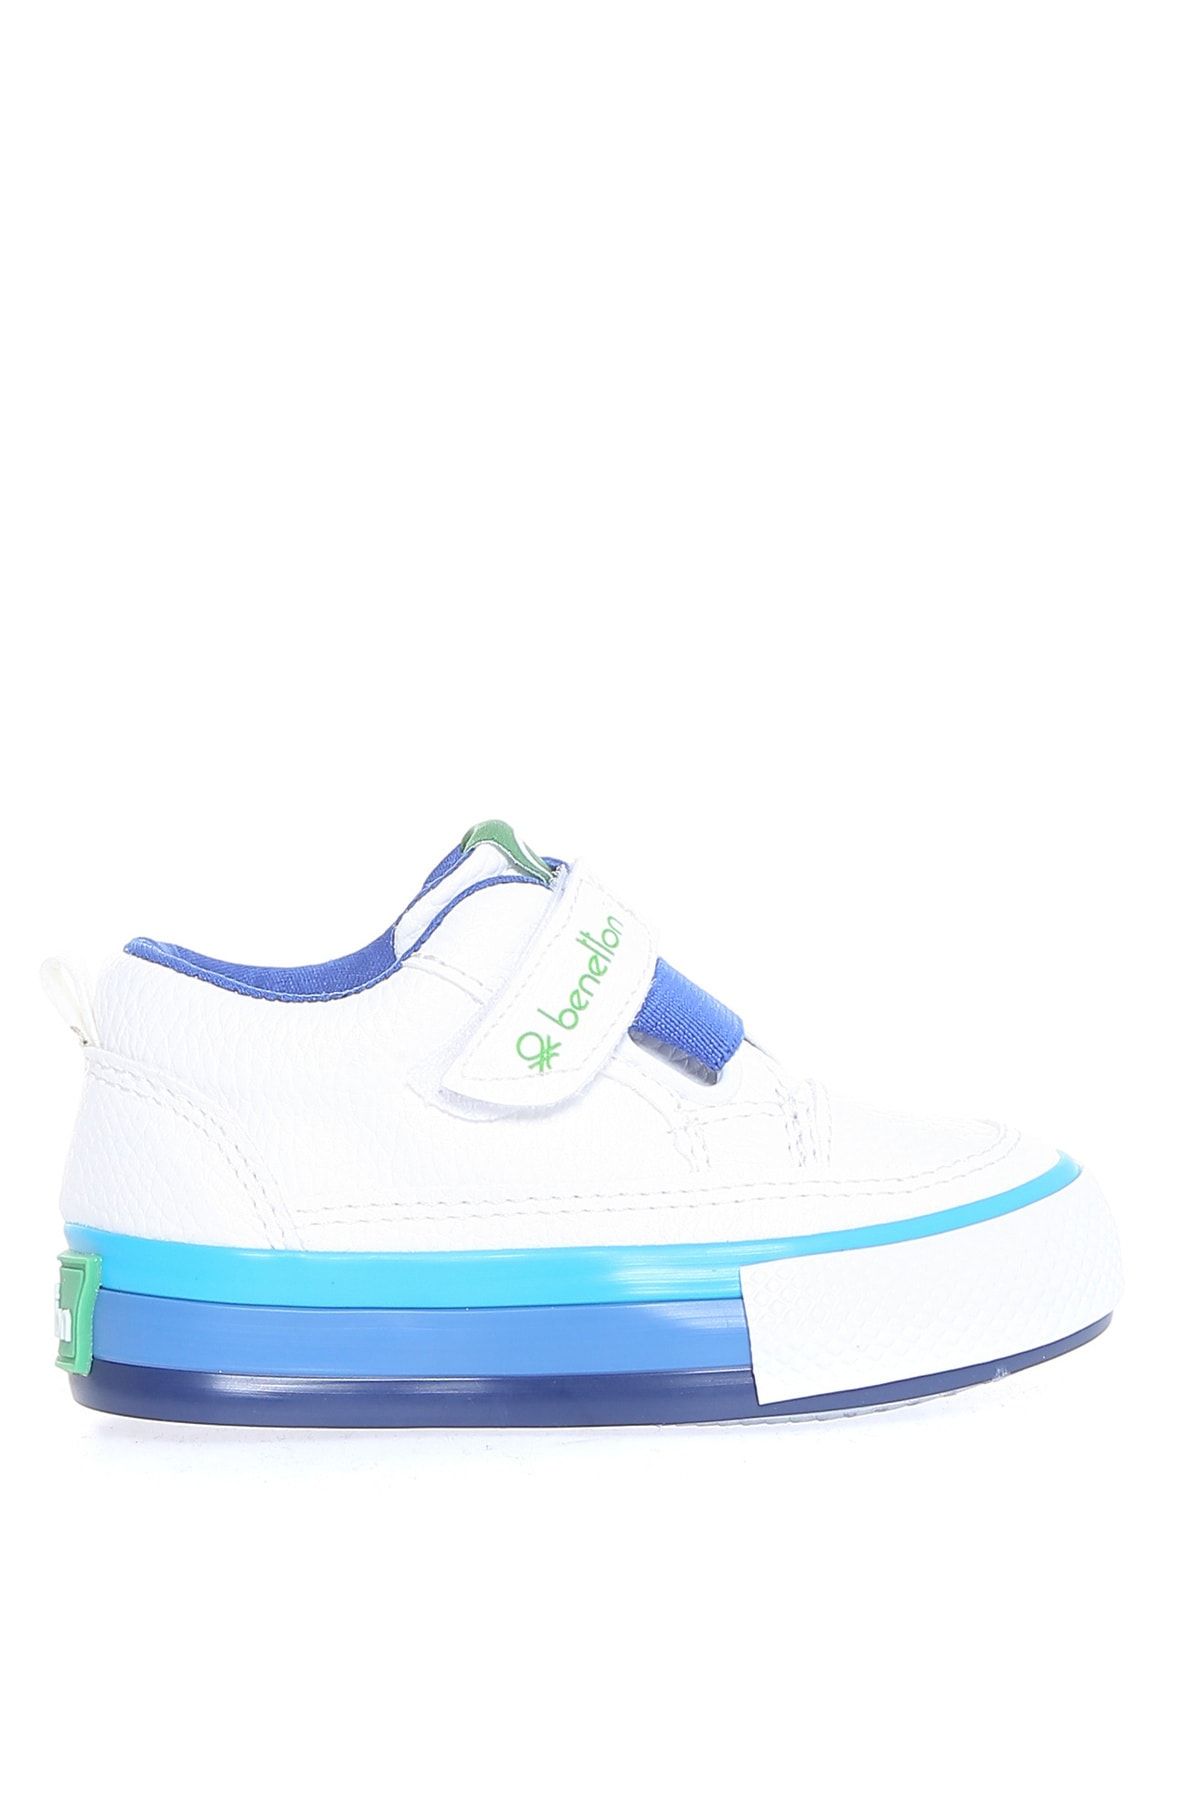 Benetton Beyaz - Mavi Bebek Yürüyüş Ayakkabısı BN-30445 688-Beyaz Mavi